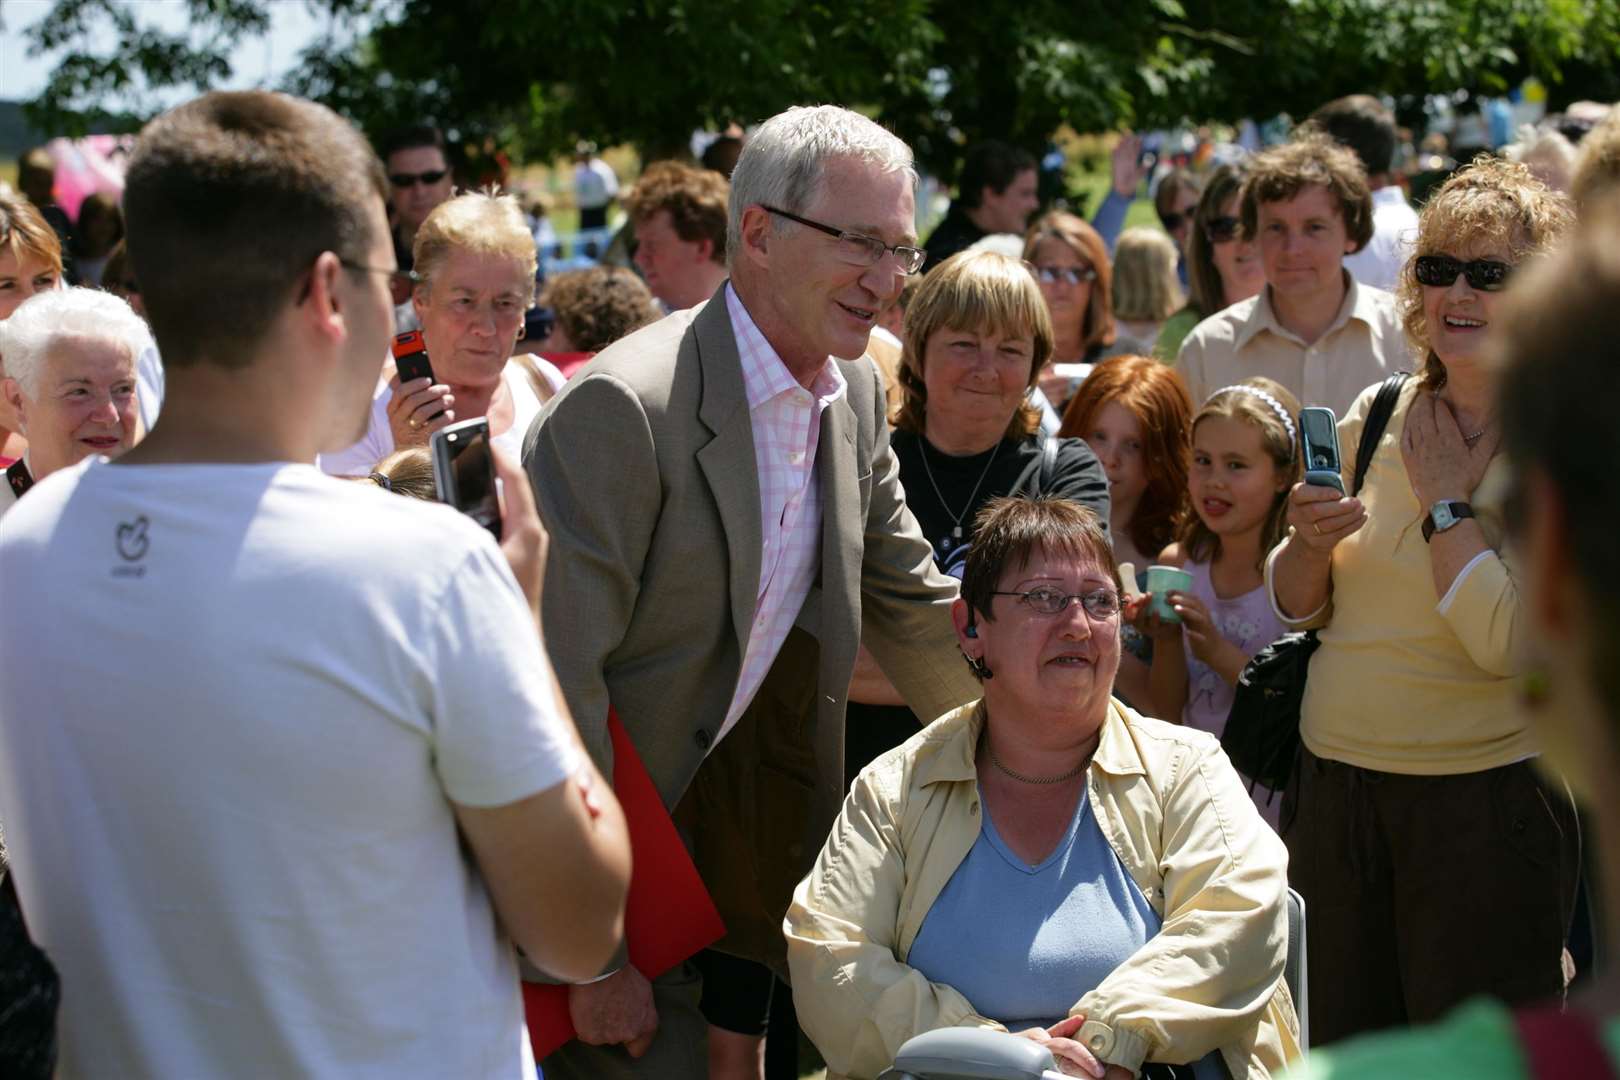 Paul O'Grady at the Aldington village fete in 2008